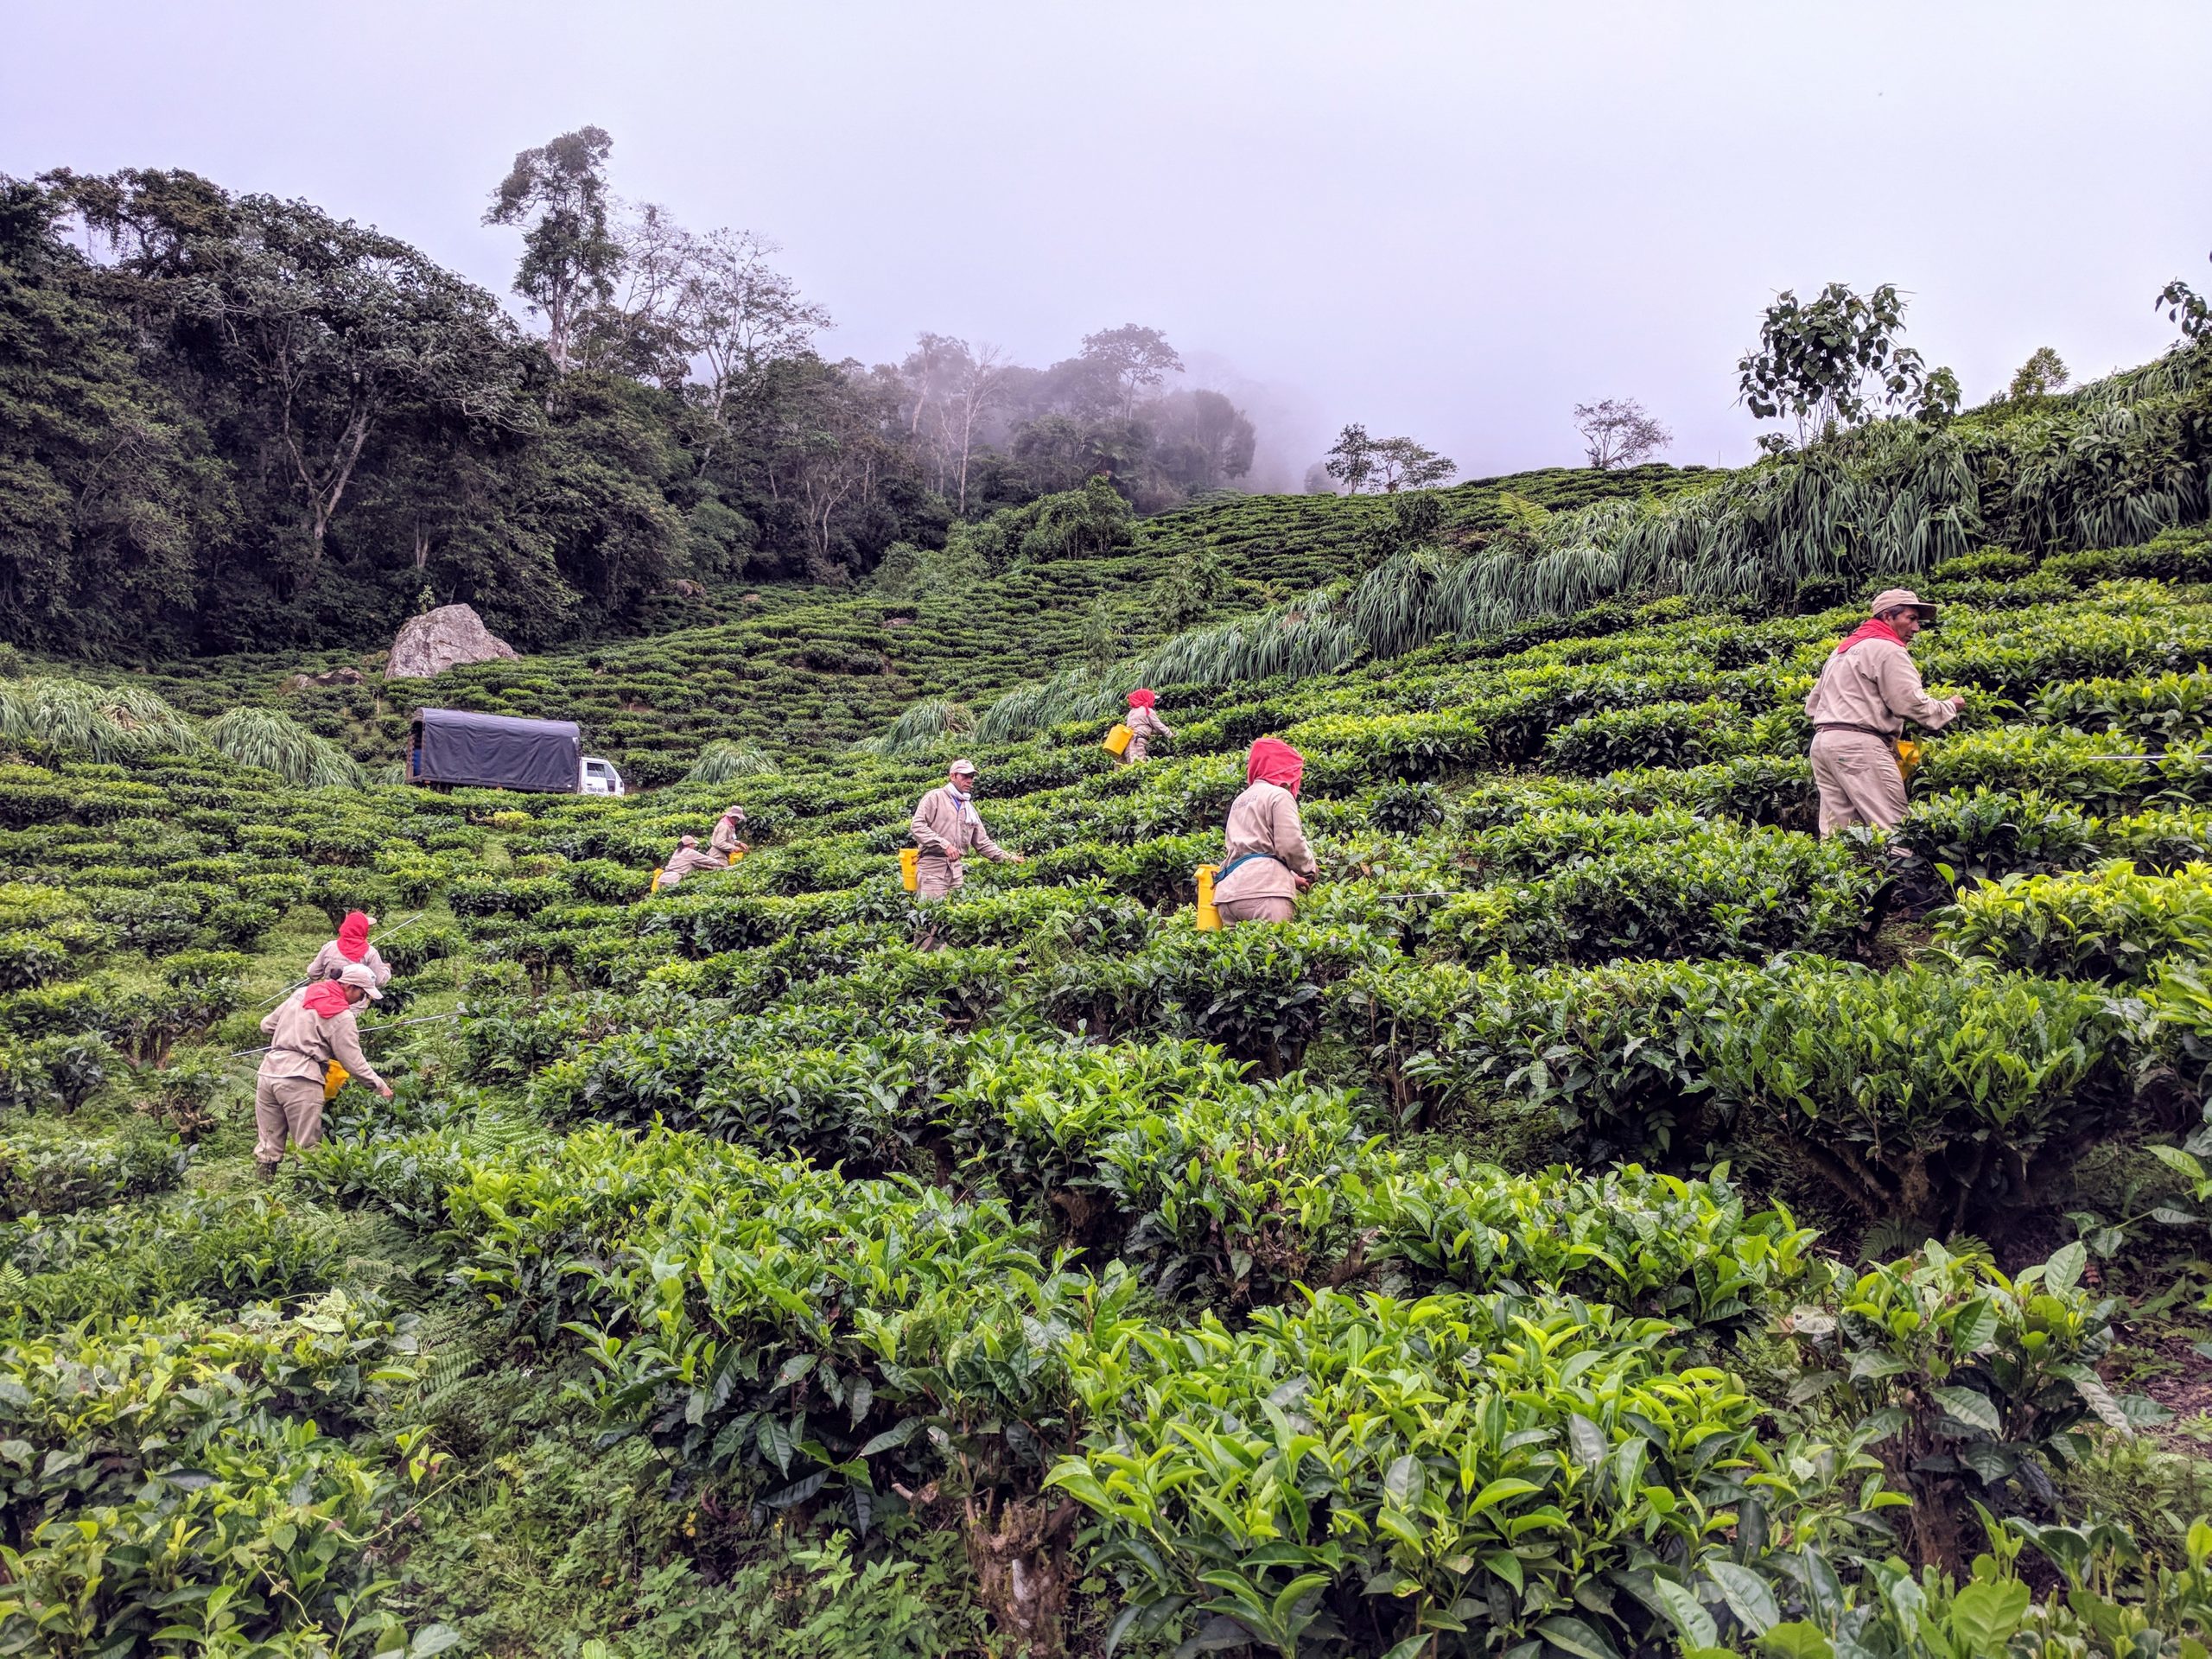 Farmers Harvesting Tea on Hillside